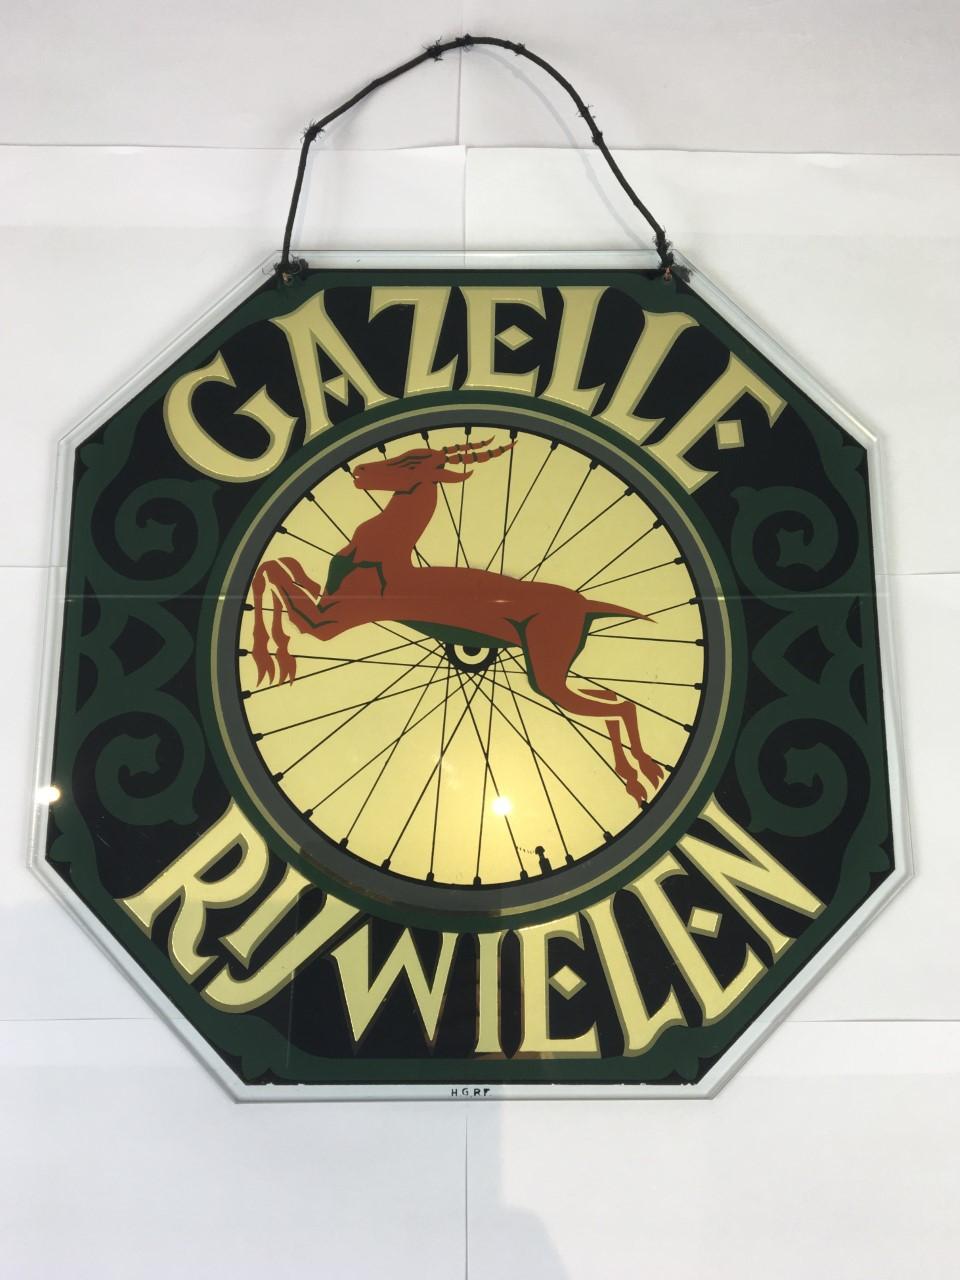 Altes Glas-Werbeschild für Gazelle Bicycles, eine Fahrradfabrik in den Niederlanden seit 1892. Dieses Art-Déco-Werbeschild ist aus Glas - Werbung hinter Glas. 
Schönes grünes mit schwarzem Design, goldener Schriftzug mit einem Fahrradrad in der